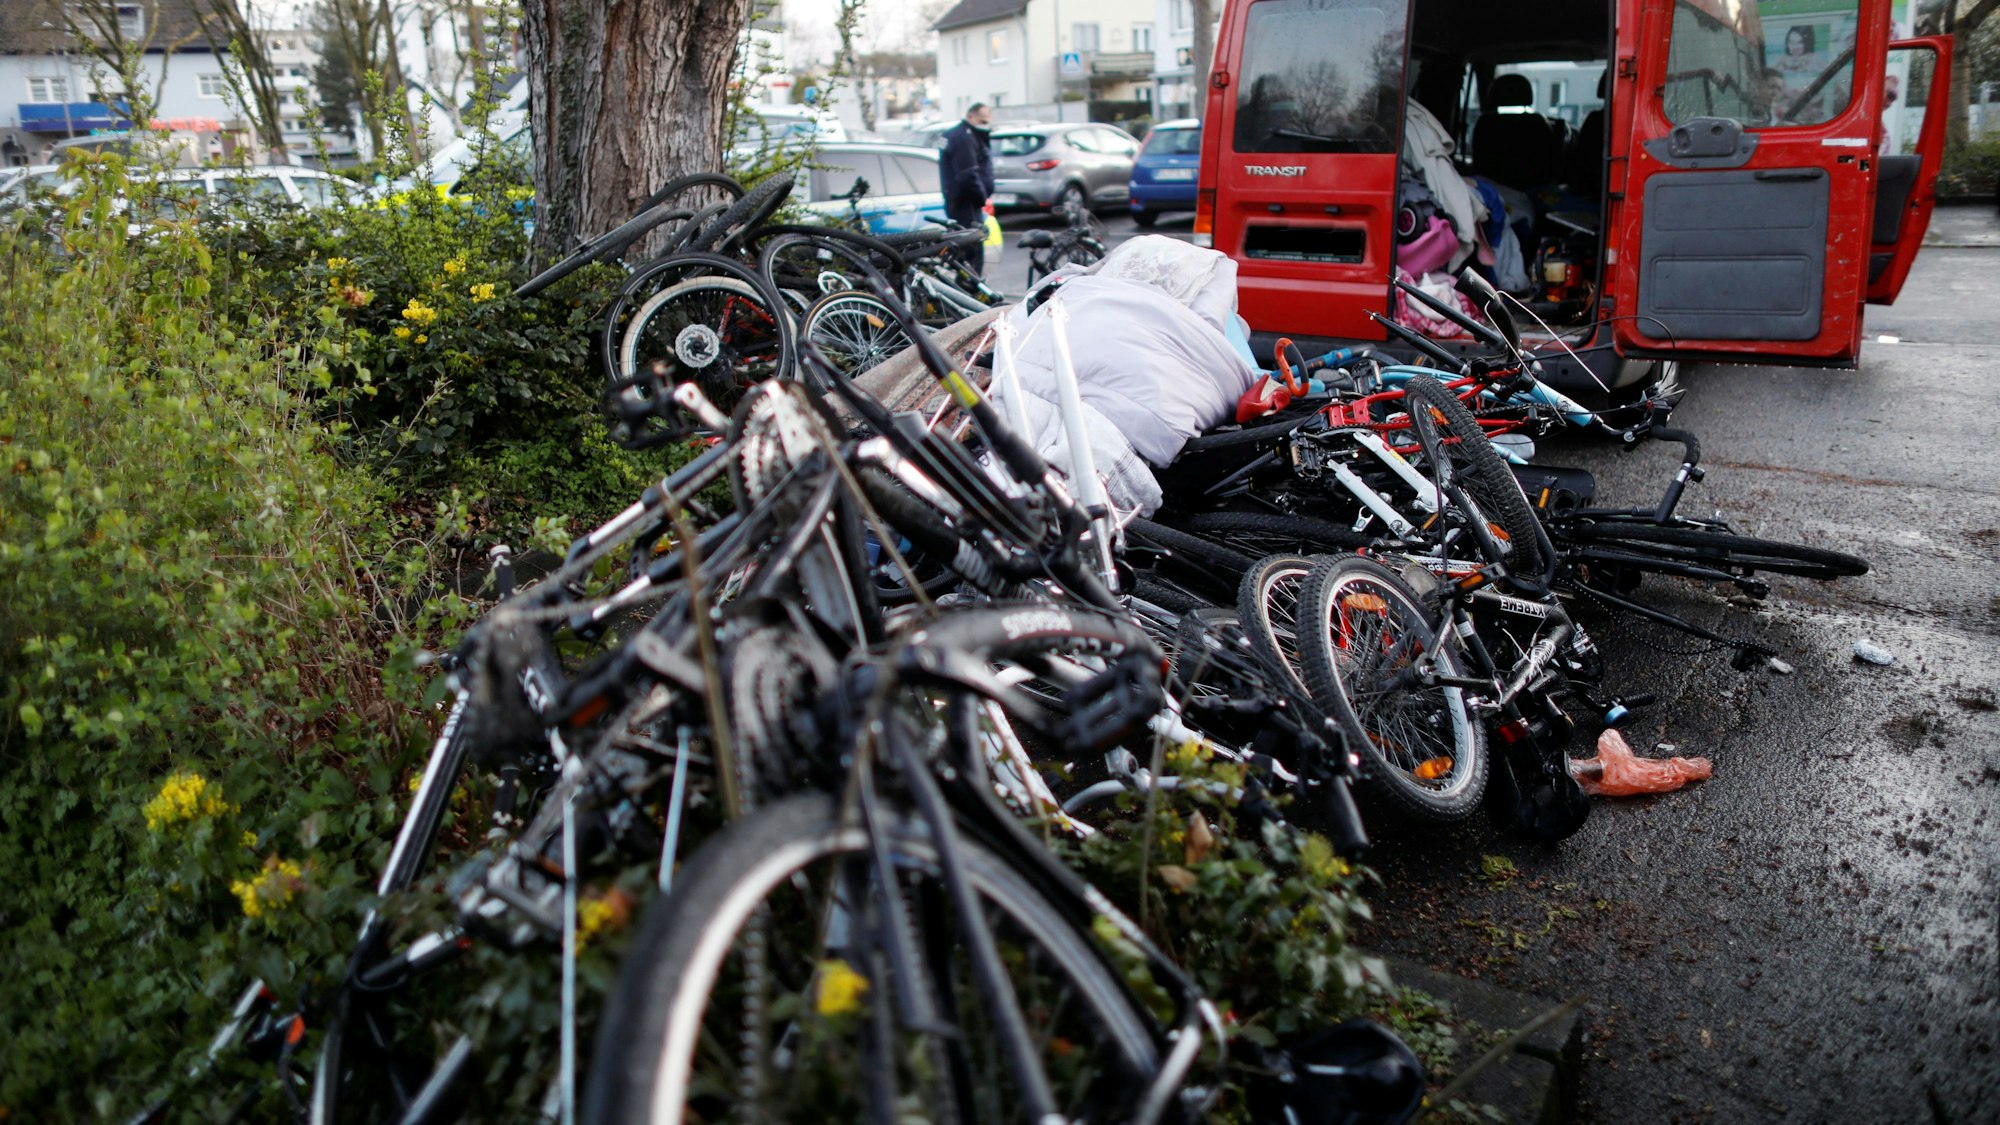 Bei einer Kontrolle in Köln in 2021 stellte die Polizei in einem Transporter mehrere Fahrräder sicher (Symbolbild)